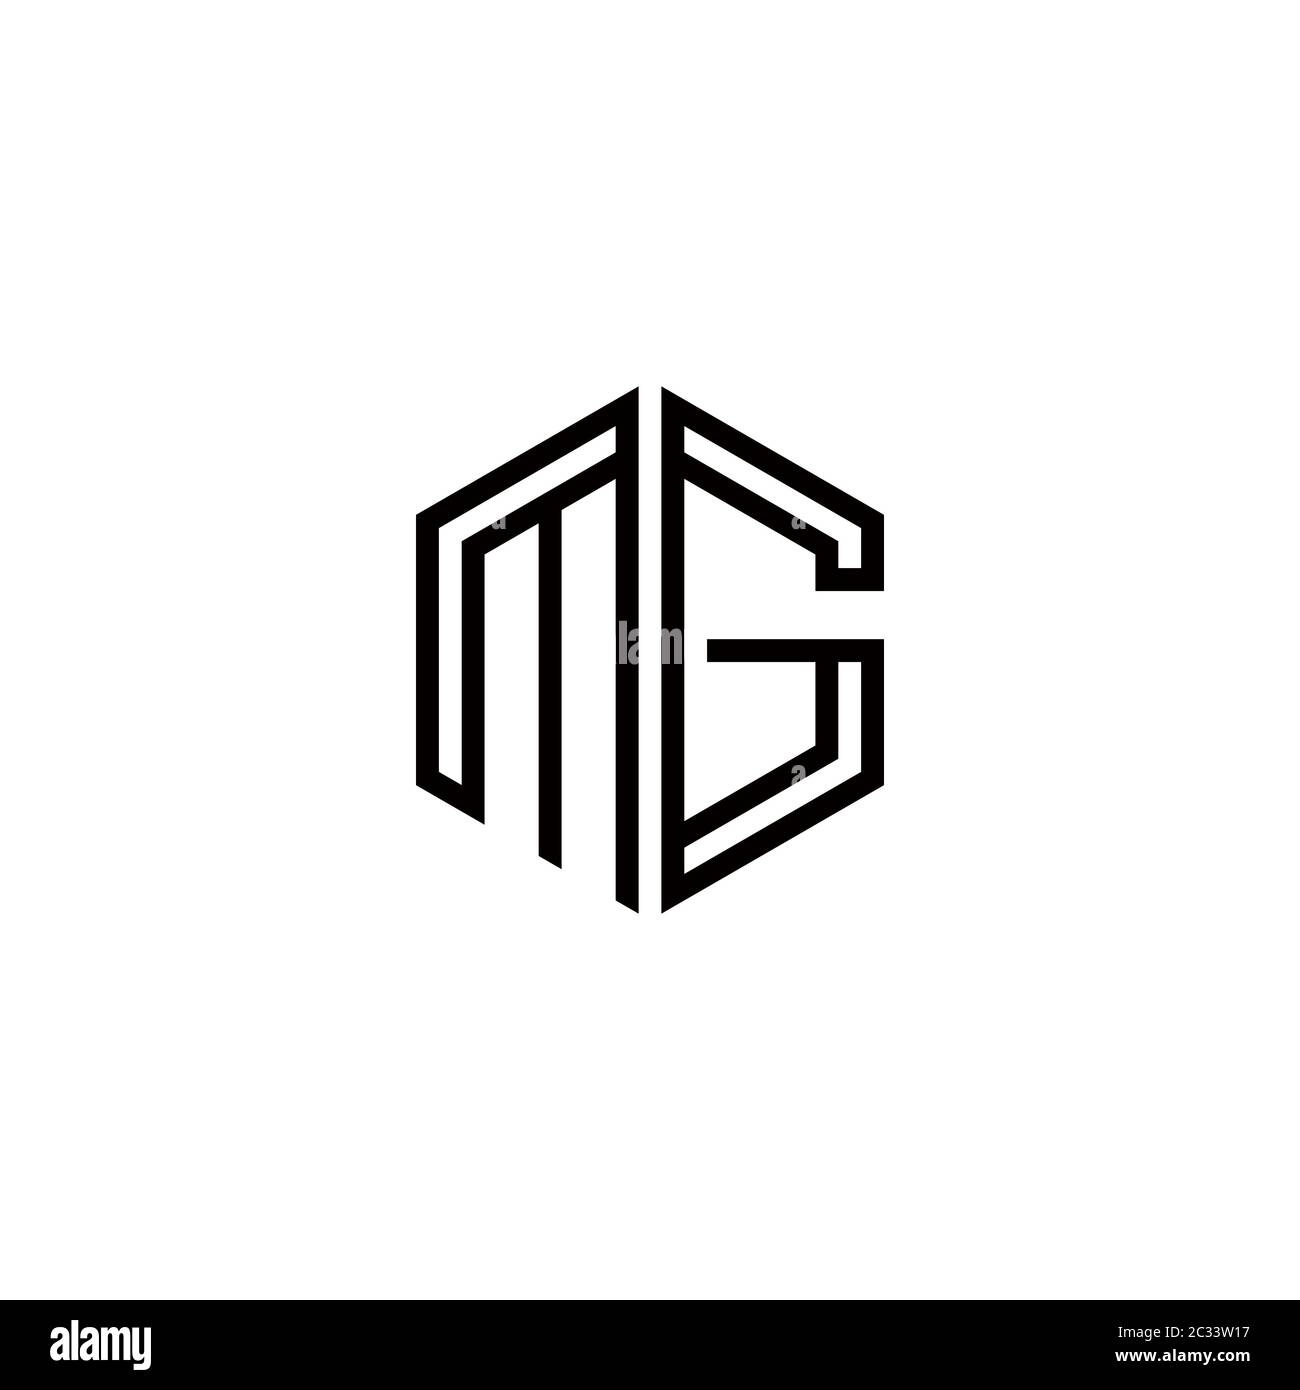 Letter MG Monogram Logo Design Stock Vector - Illustration of letter,  lettermark: 280974247